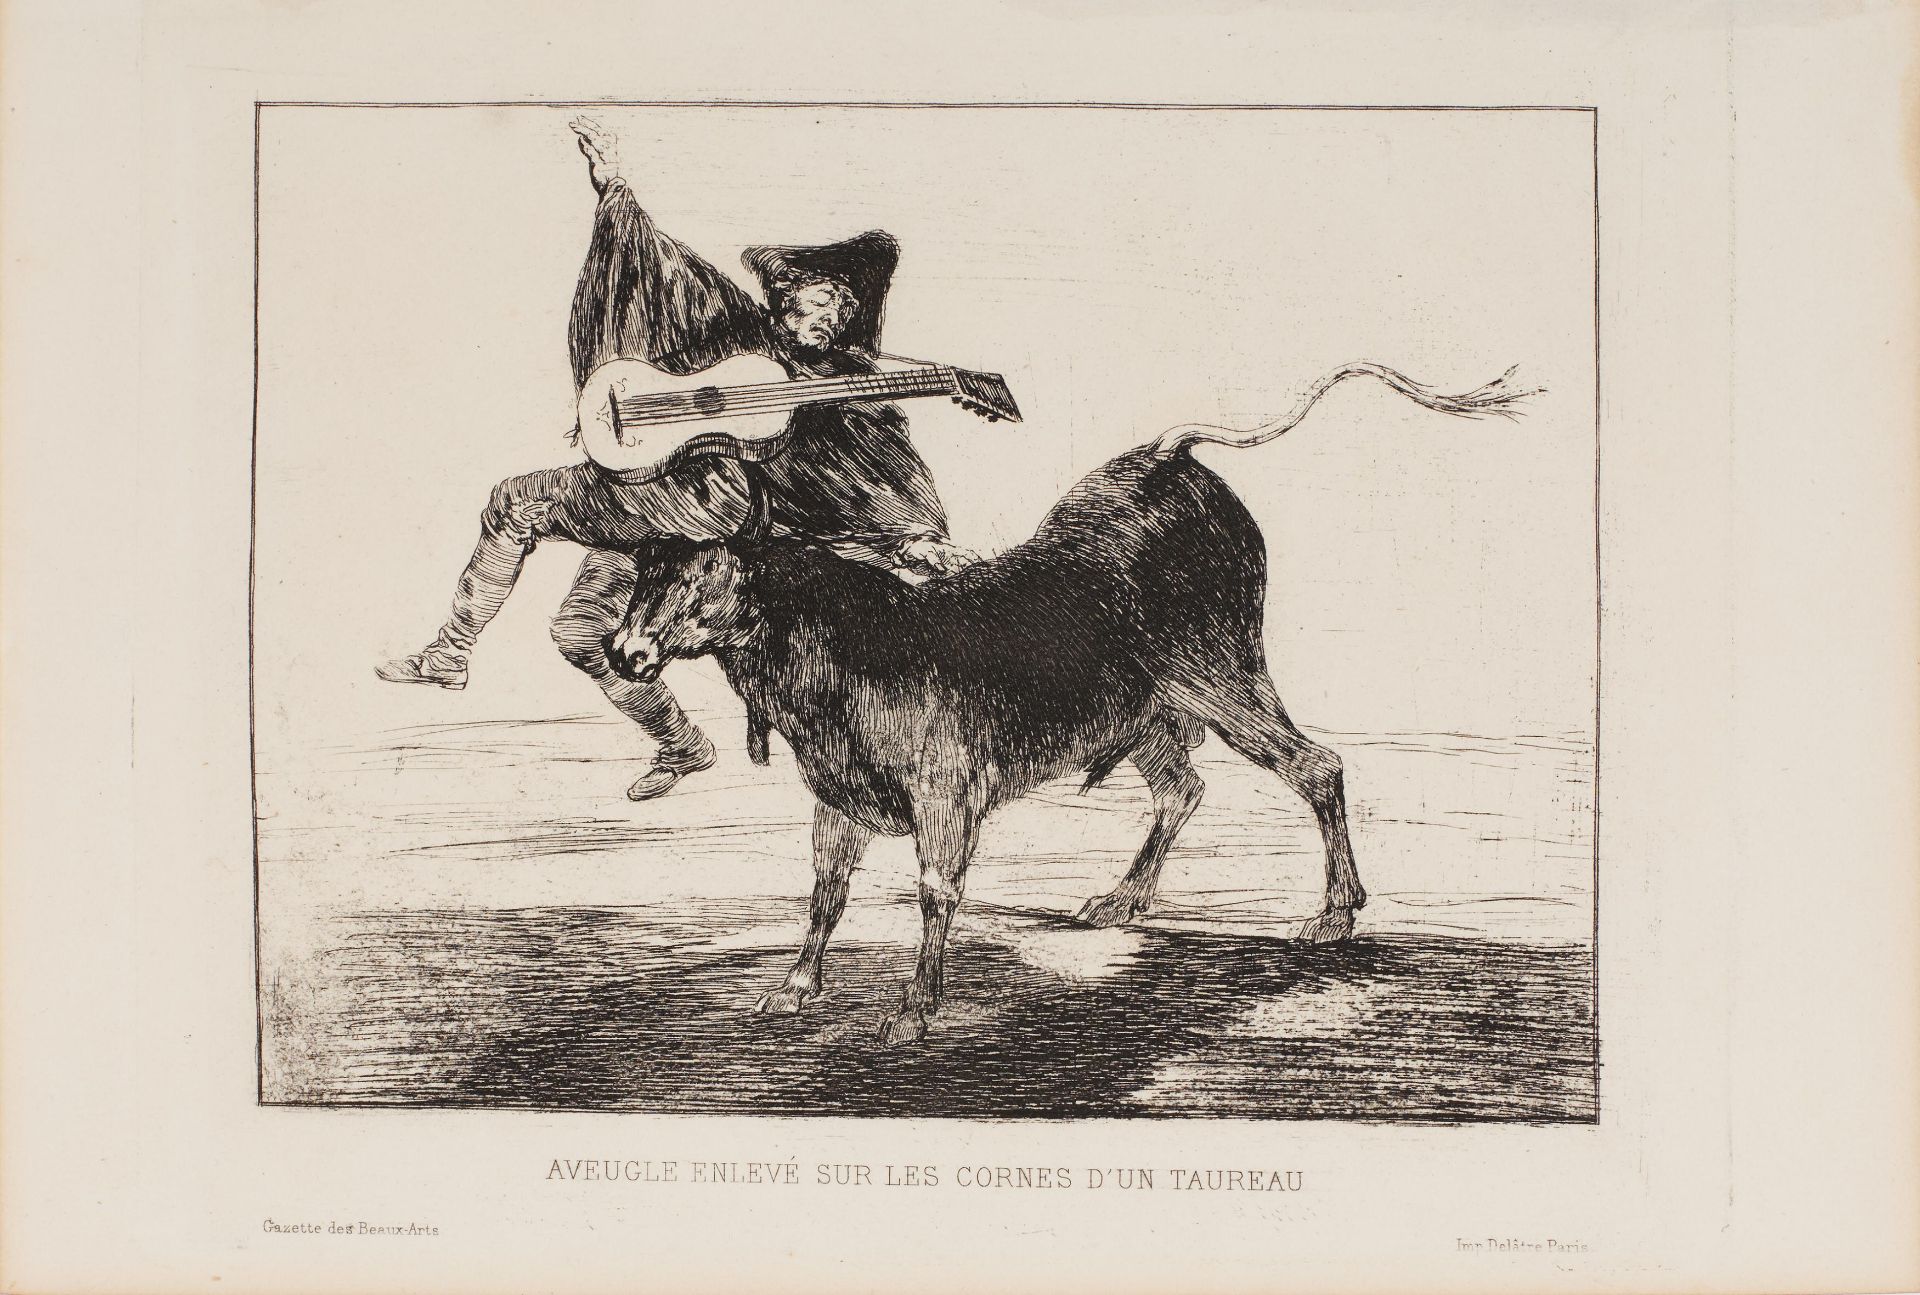 Francisco José de Goya y Lucientes: Aveugle enlevé sur les cornes d'un Taureau